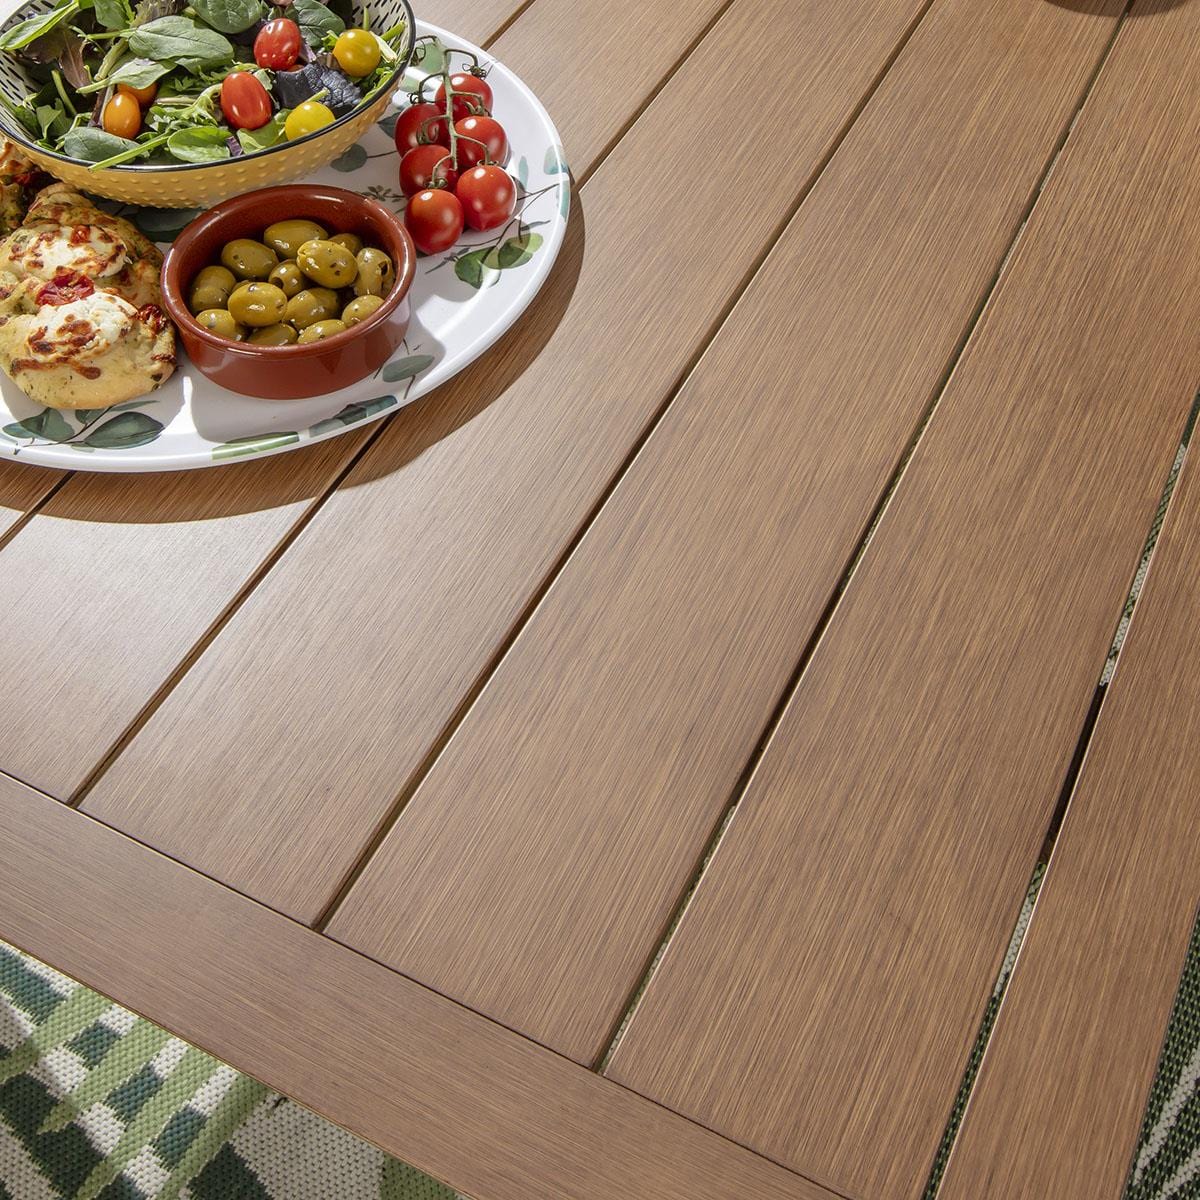 Quatropi Verity 8 Seater Garden Dining Set Beige & Oak Wood Effect Aluminium